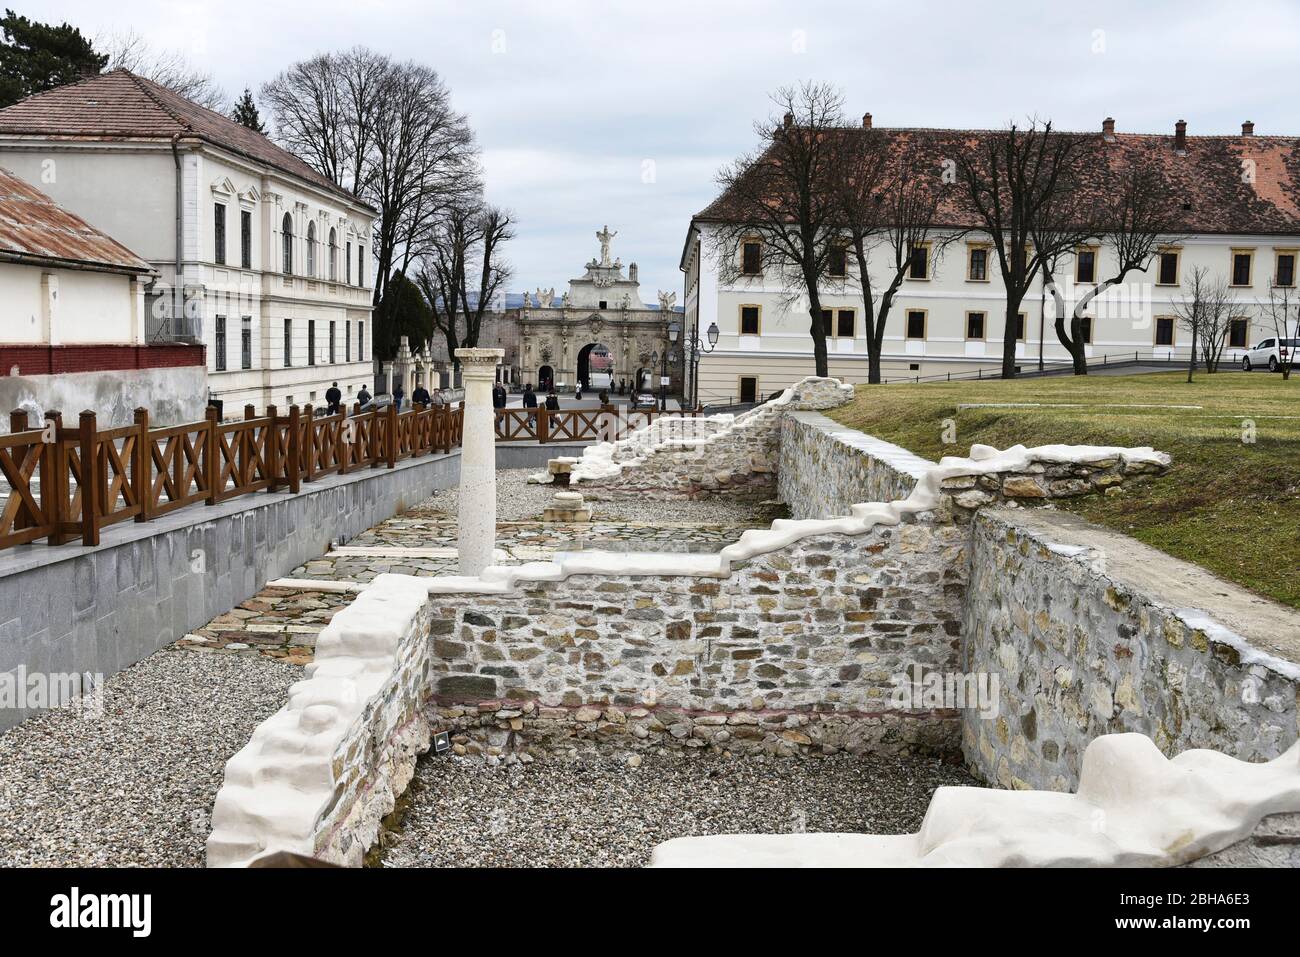 Europe, Romania, Alba Iulia, Karlsburg, Weissenburg, Alba County, Transylvania, Fortress Stock Photo